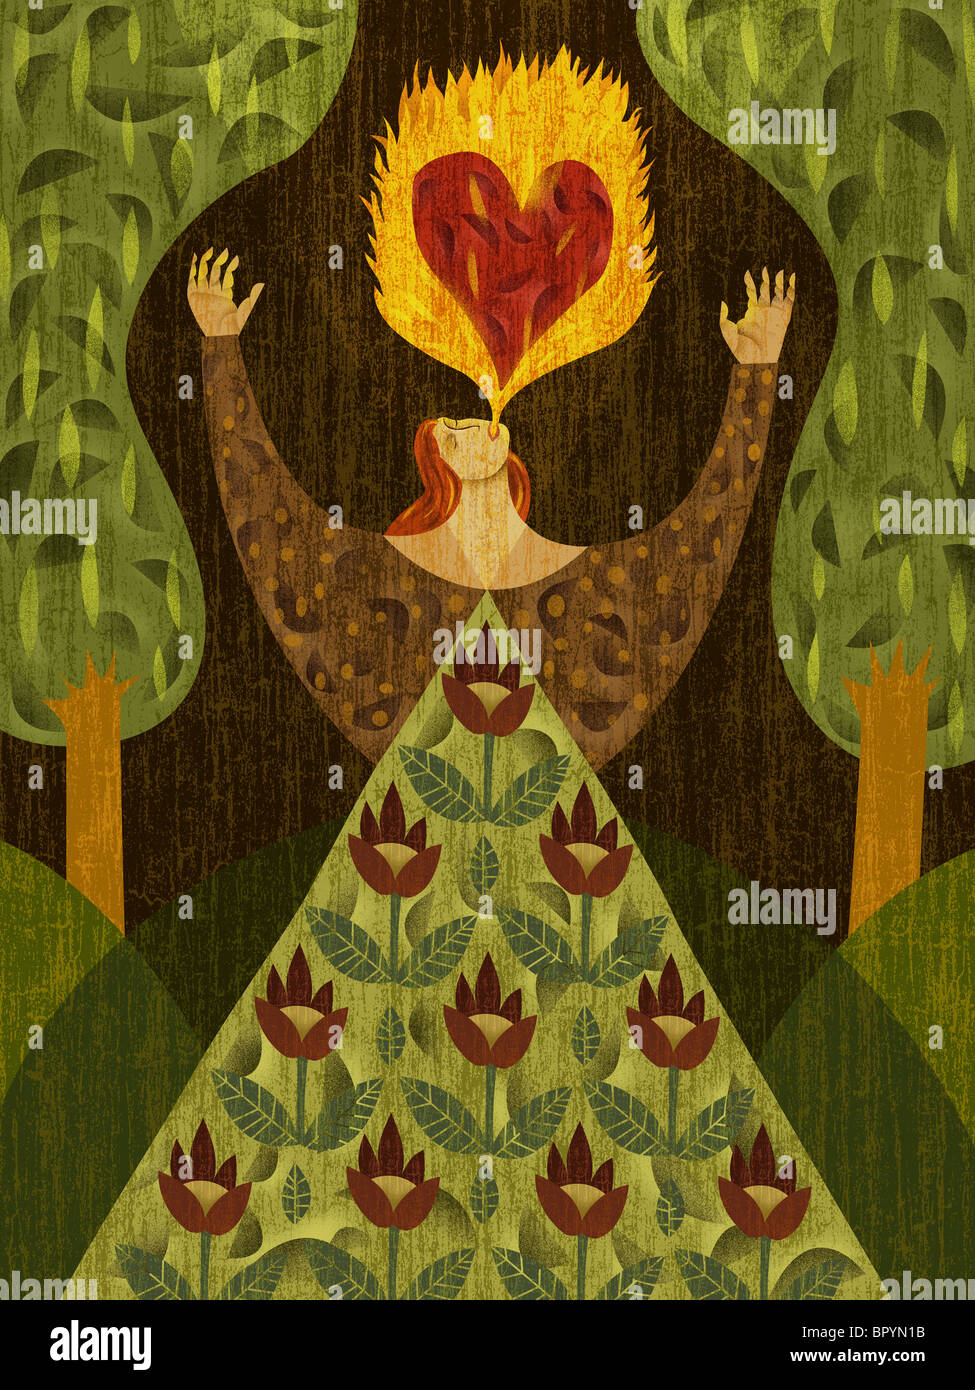 Eine Frau in einem Wald mit Herz-Form in ihr Feuer zu speien Stockfoto